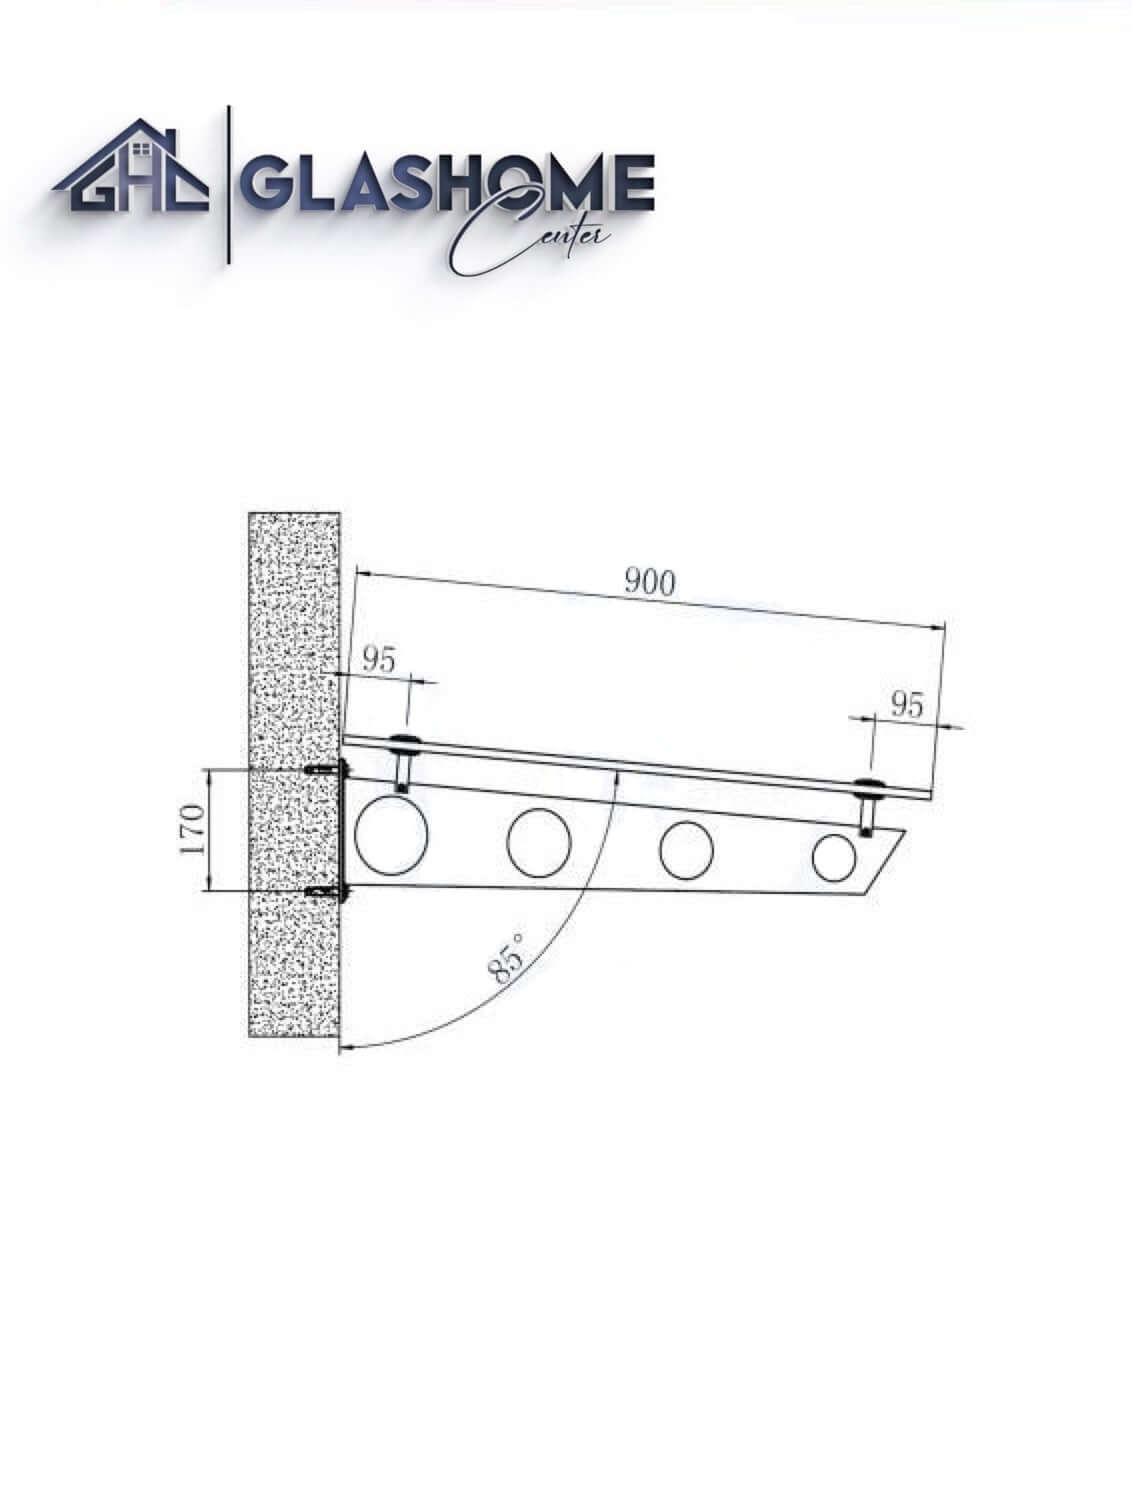 GlasHomeCenter - baldacchino in vetro - vetro trasparente - 120x90 cm - vetro di sicurezza stratificato 13,1 mm - incl.2 staffe in acciaio inossidabile nero variante "Stoccolma"